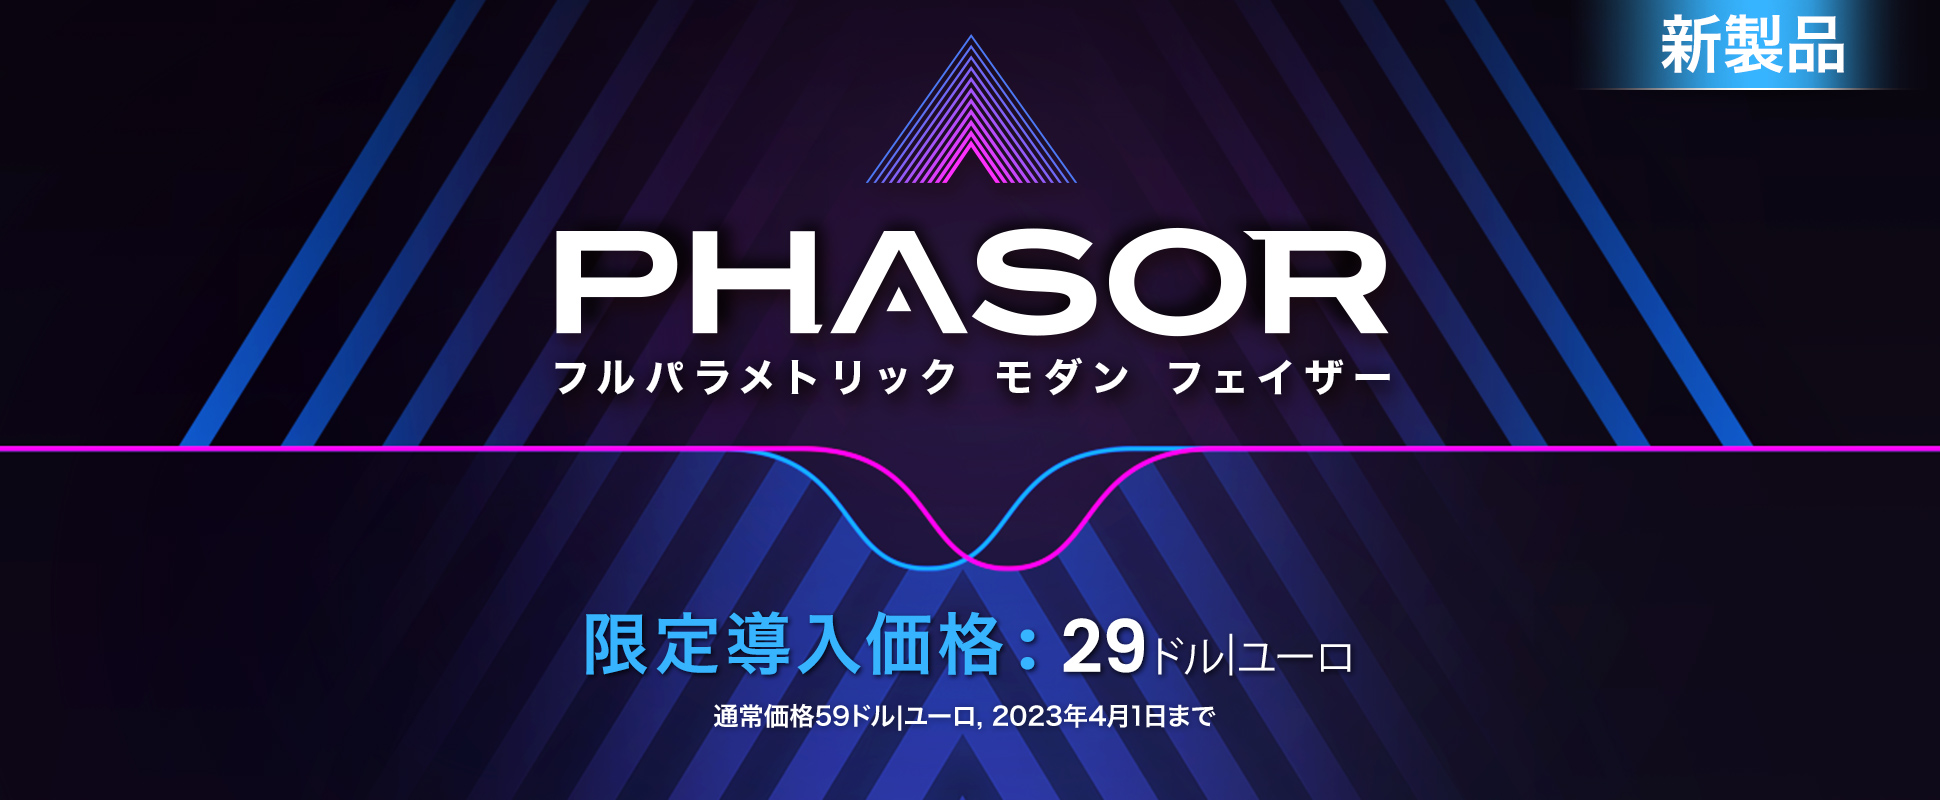 Release - Phasor - Mars 2023